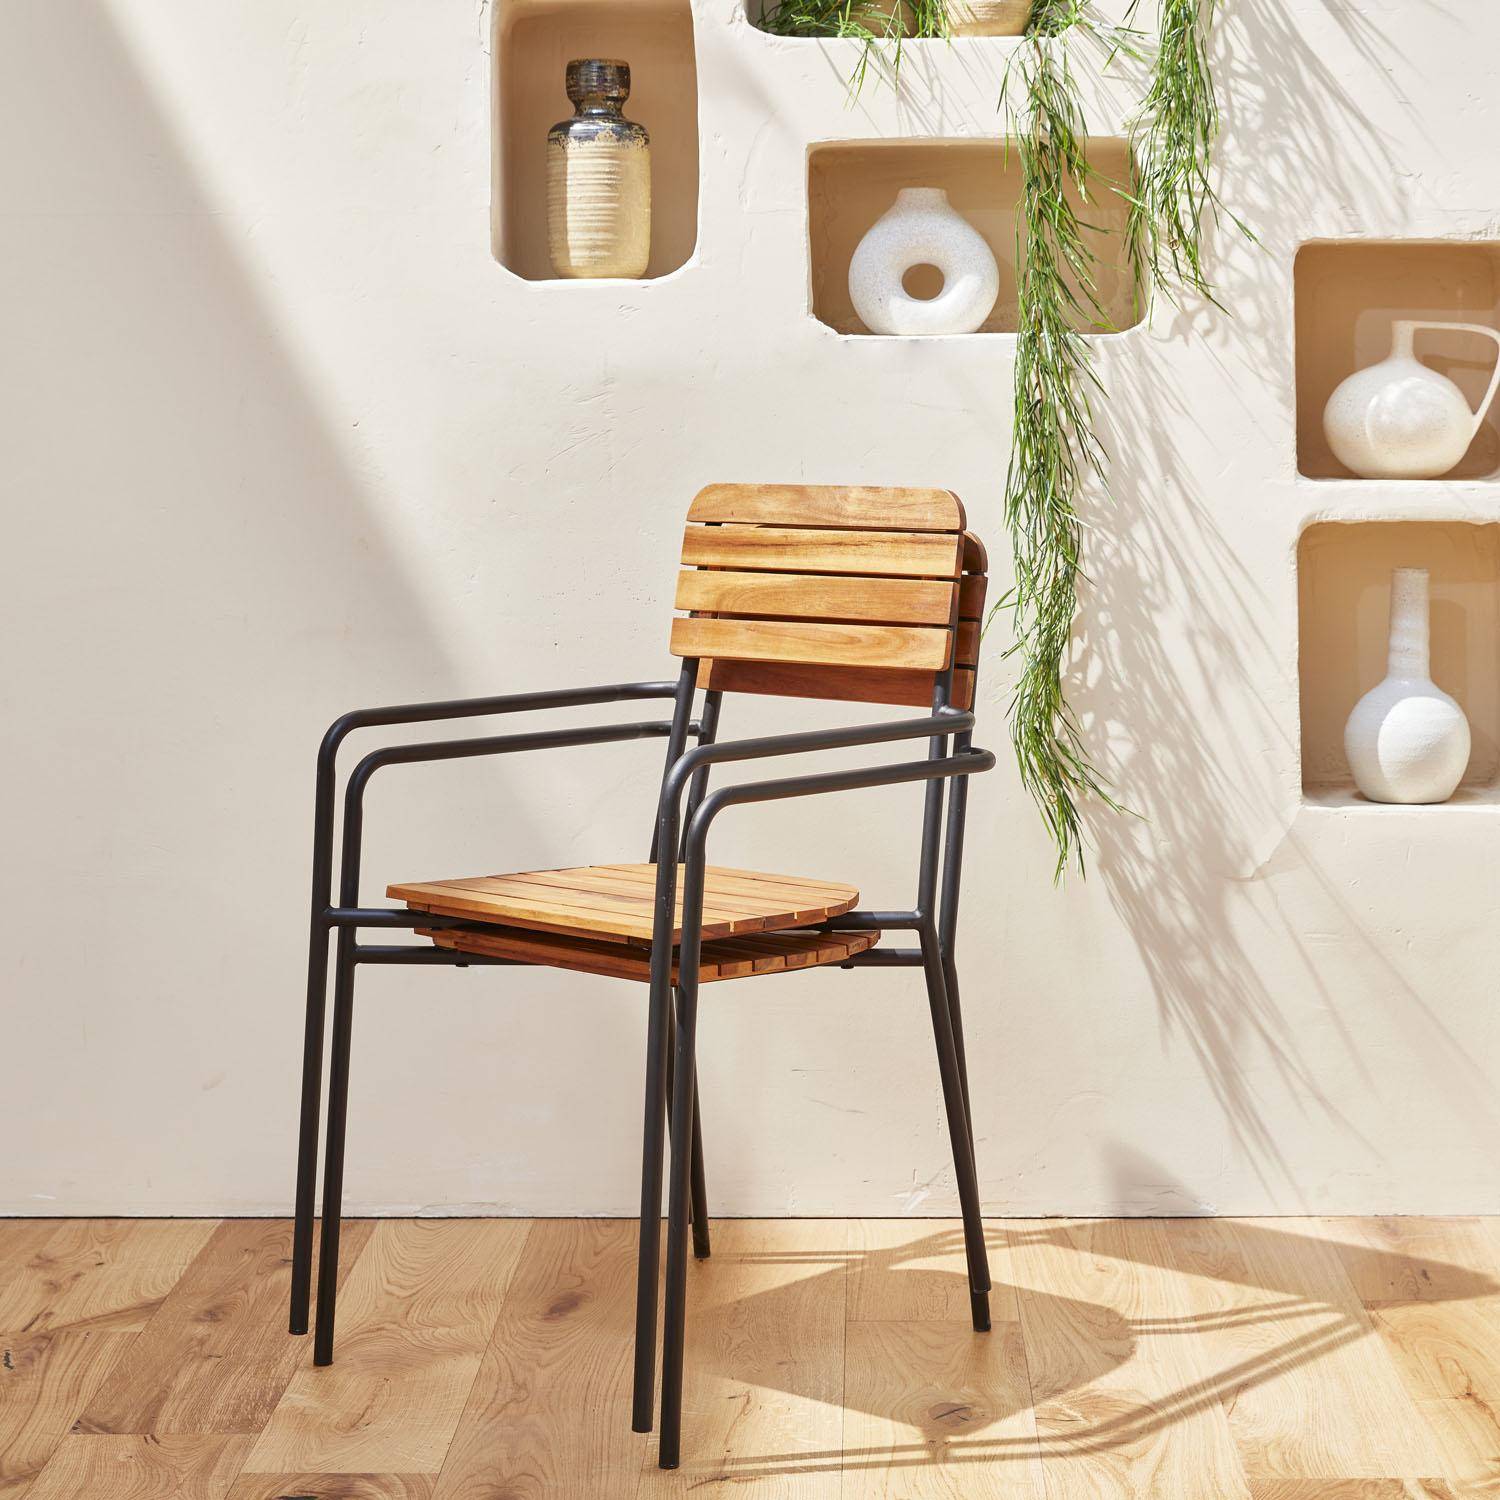 Gartenmöbel-Set aus Holz und Metall 180x90cm - Lima - Rechteckiger Tisch aus Akazie und Metall mit 4 Stühlen und 2 stapelbaren Sesseln Photo3